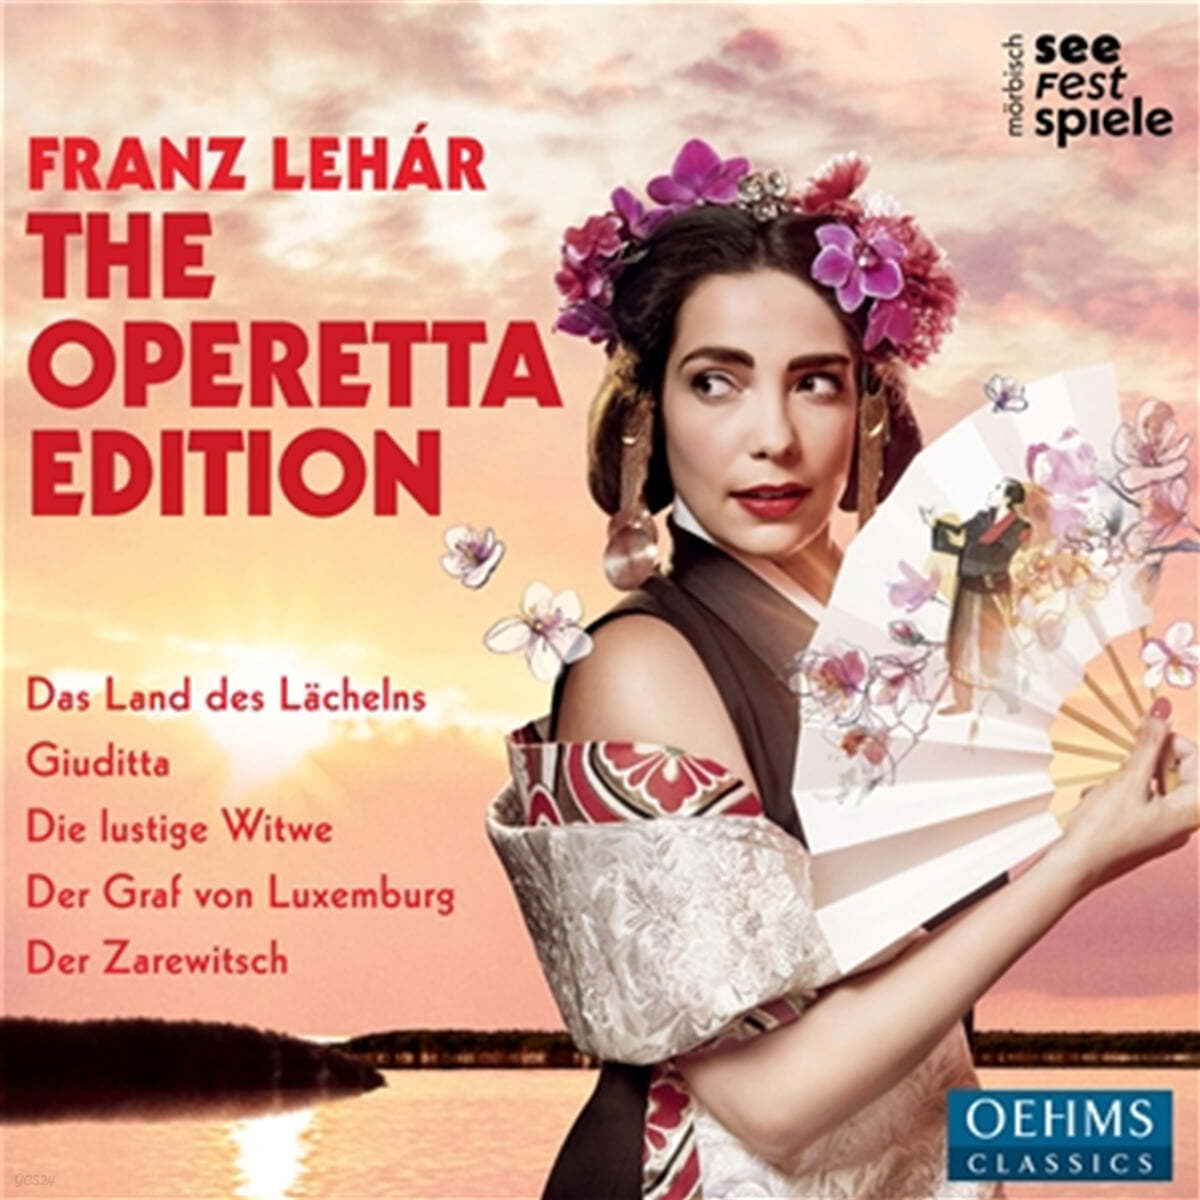 Rudolf Bibl / Wolfdieter Maurer 프란츠 레하르: 오페레타 모음집 (Franz Lehar: The Operetta Edition) 